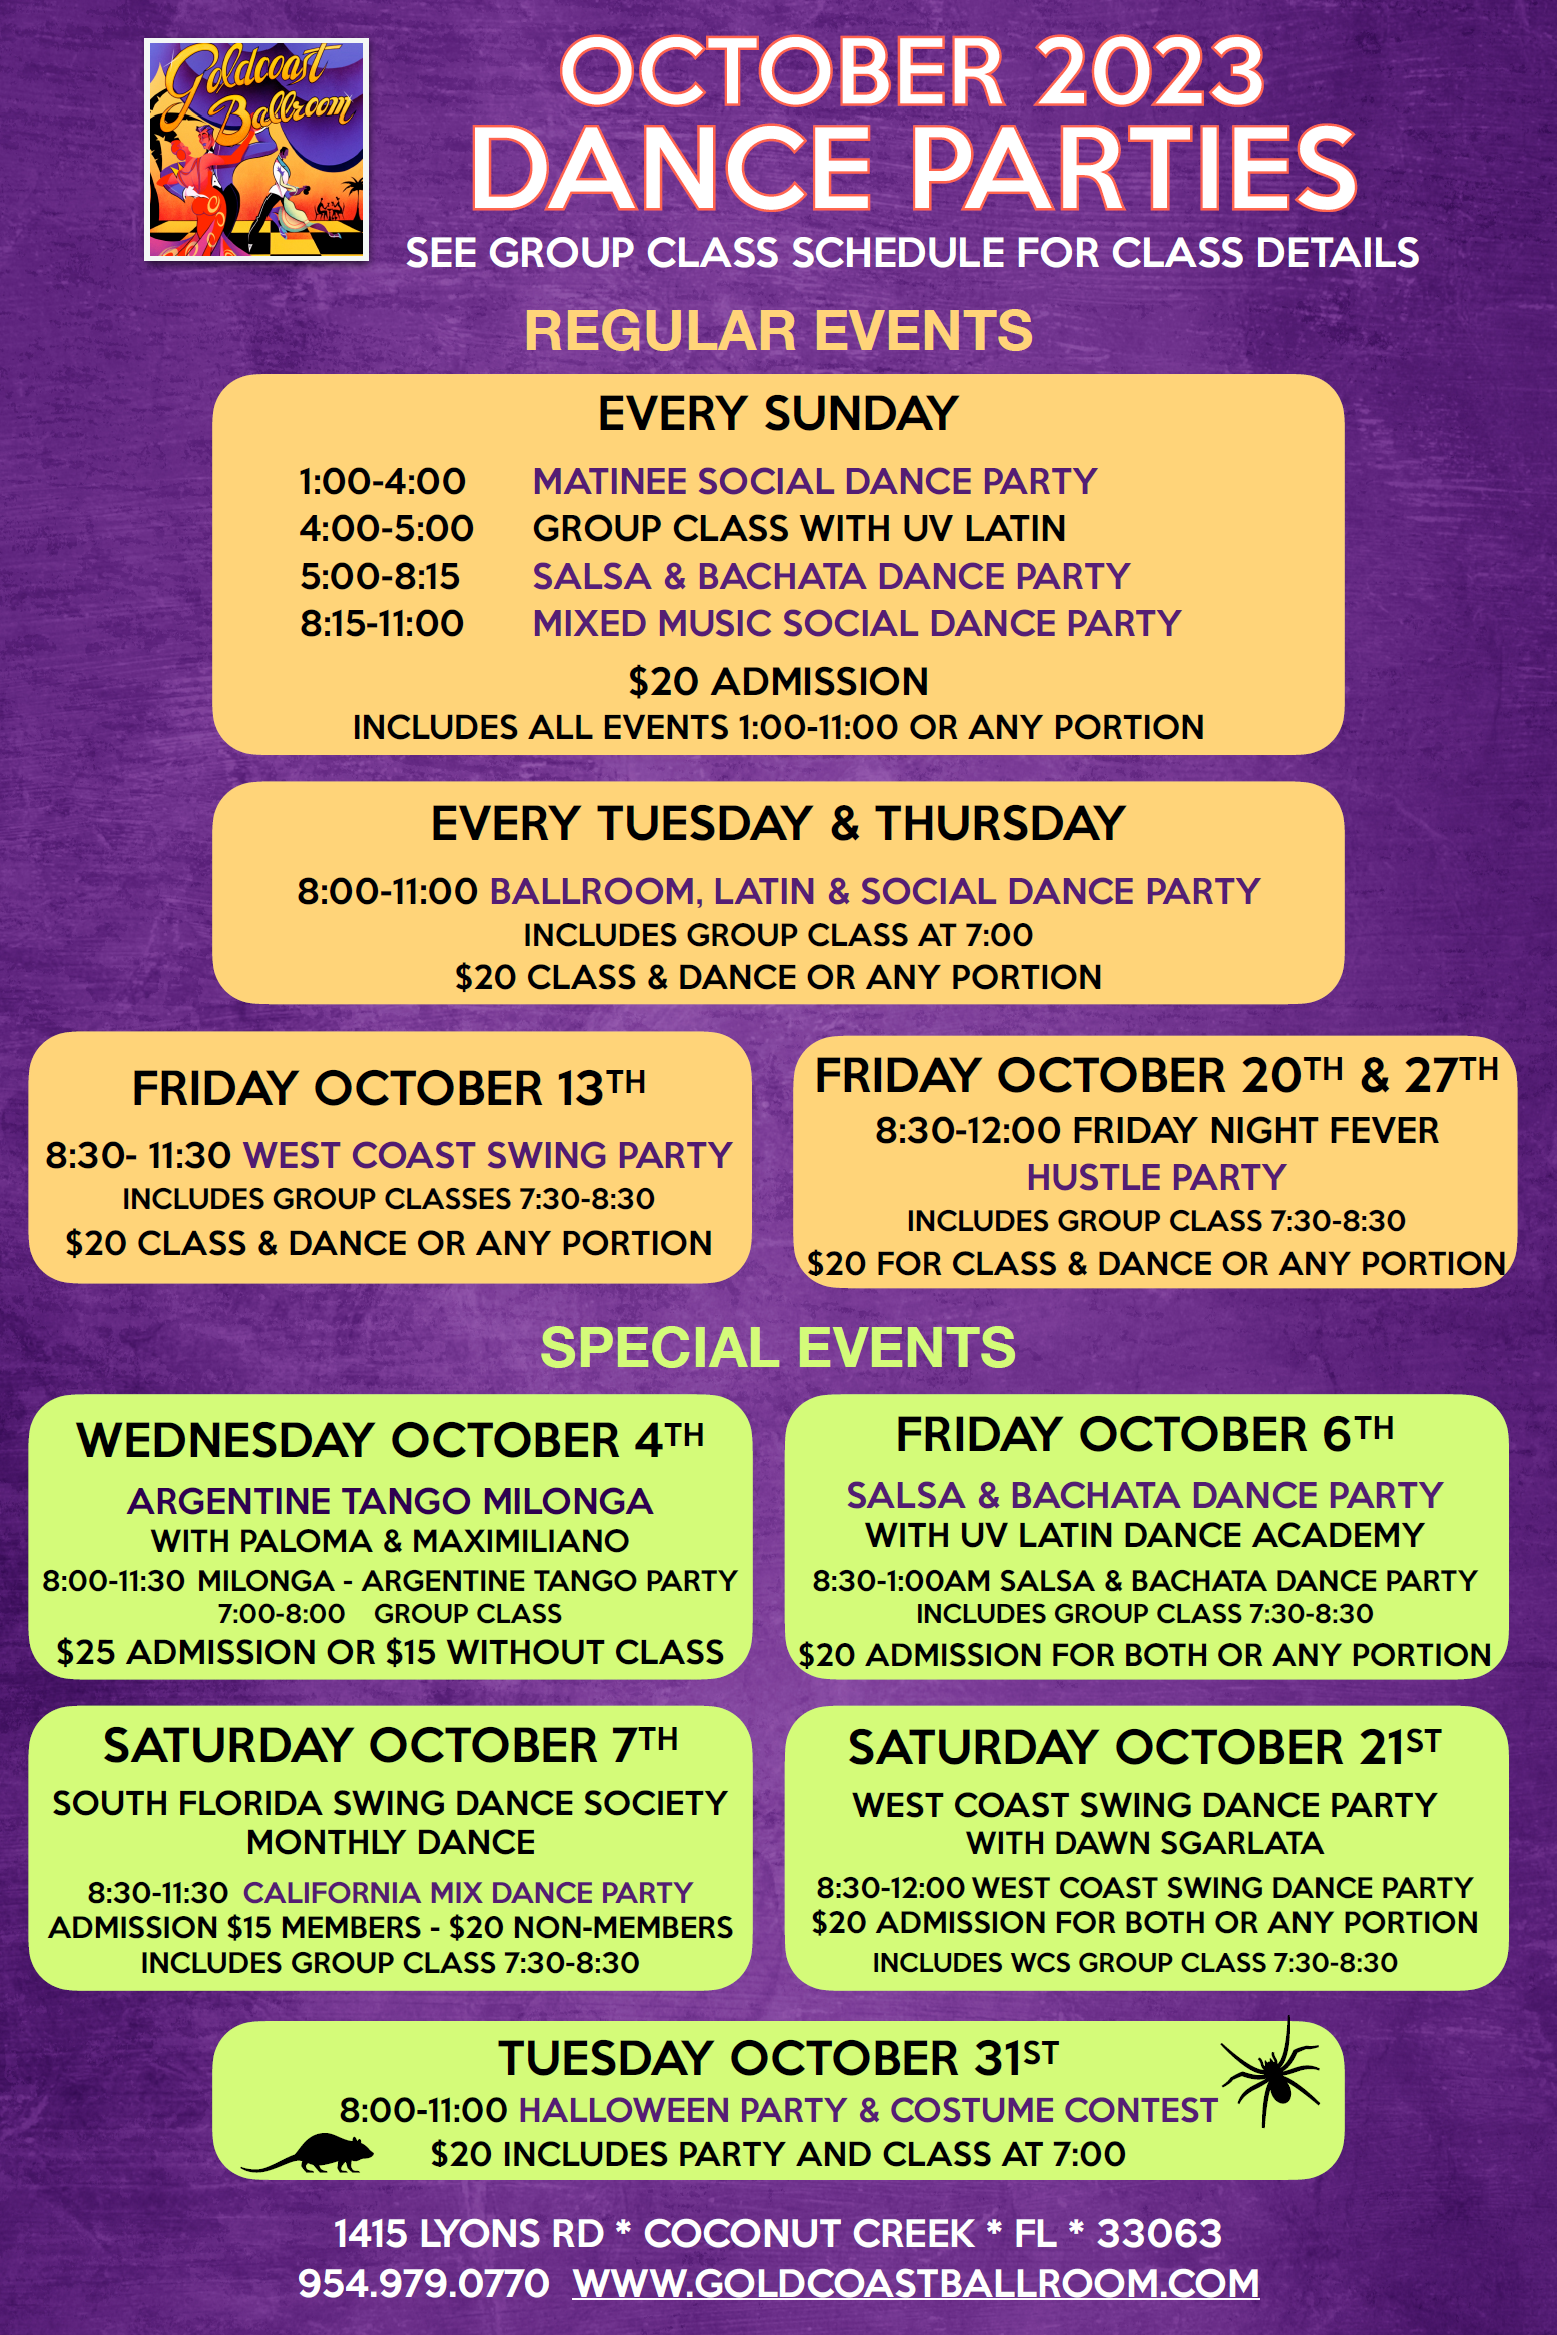 Goldcoast Ballroom October 2023 Calendar - Dance Parties